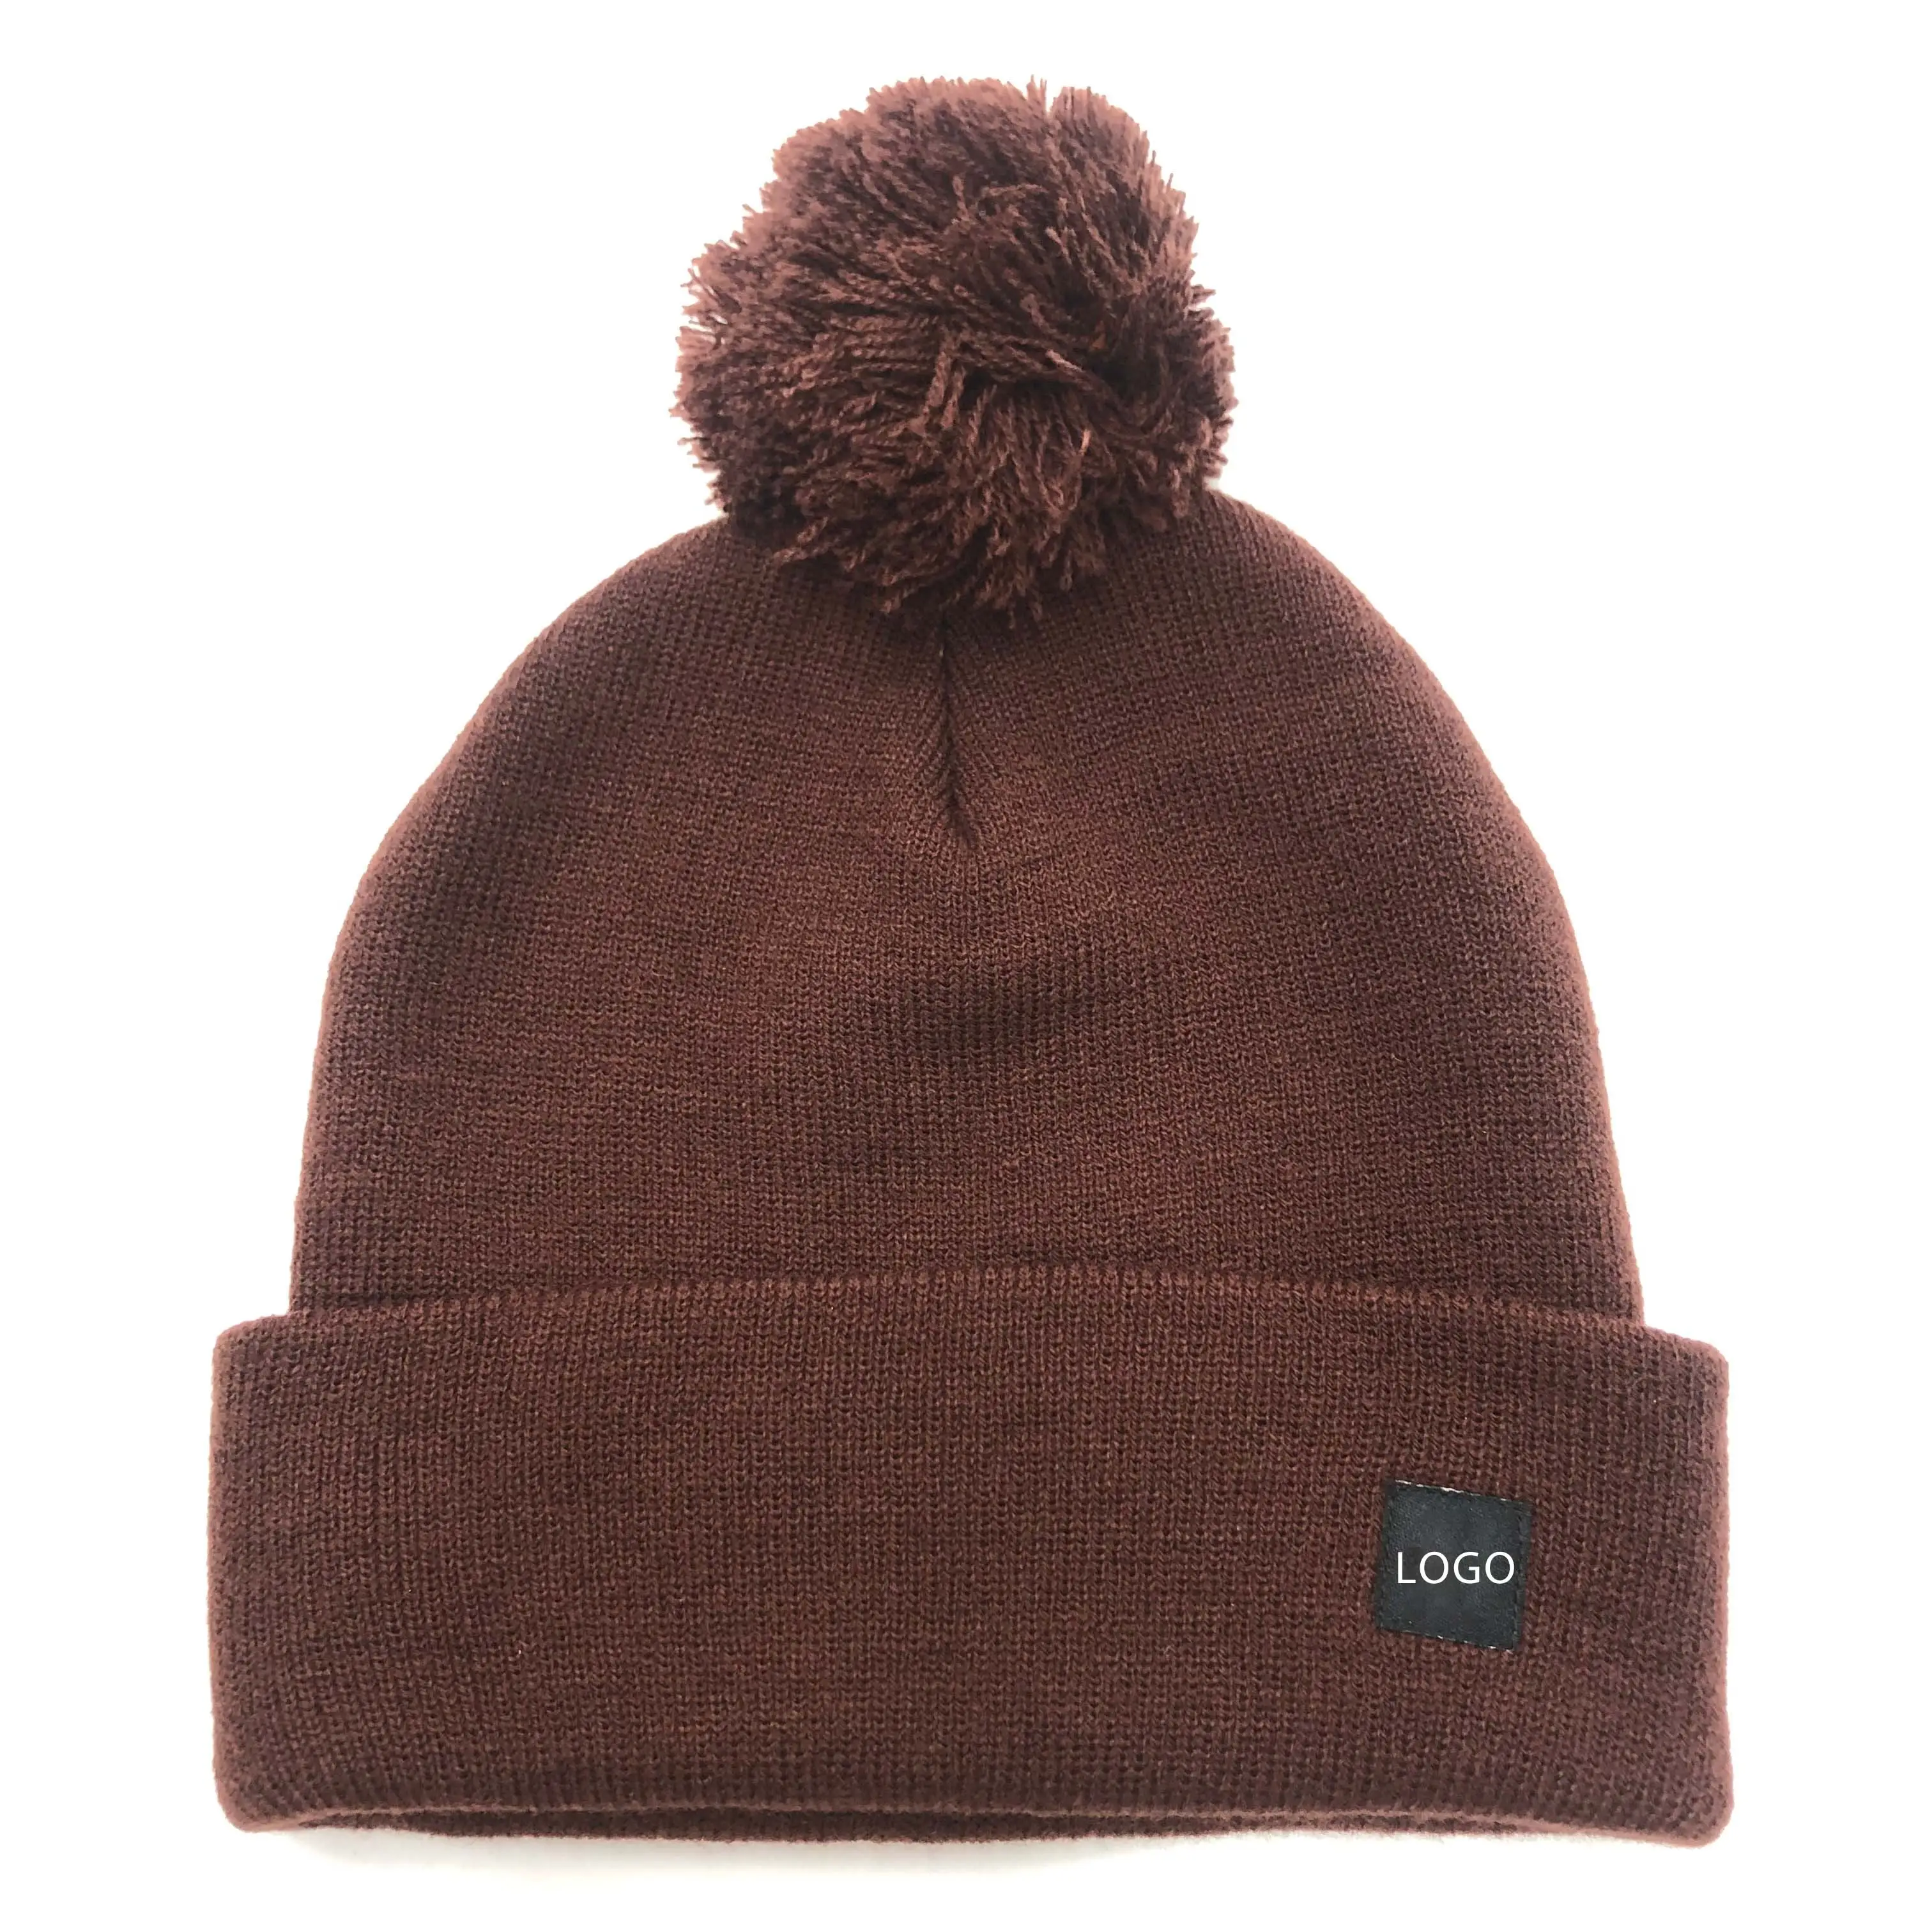 Venta al por mayor de encargo de alta calidad Beanie logo 100% acrílico POM Beanie sombrero de punto Beanie sombreros de invierno